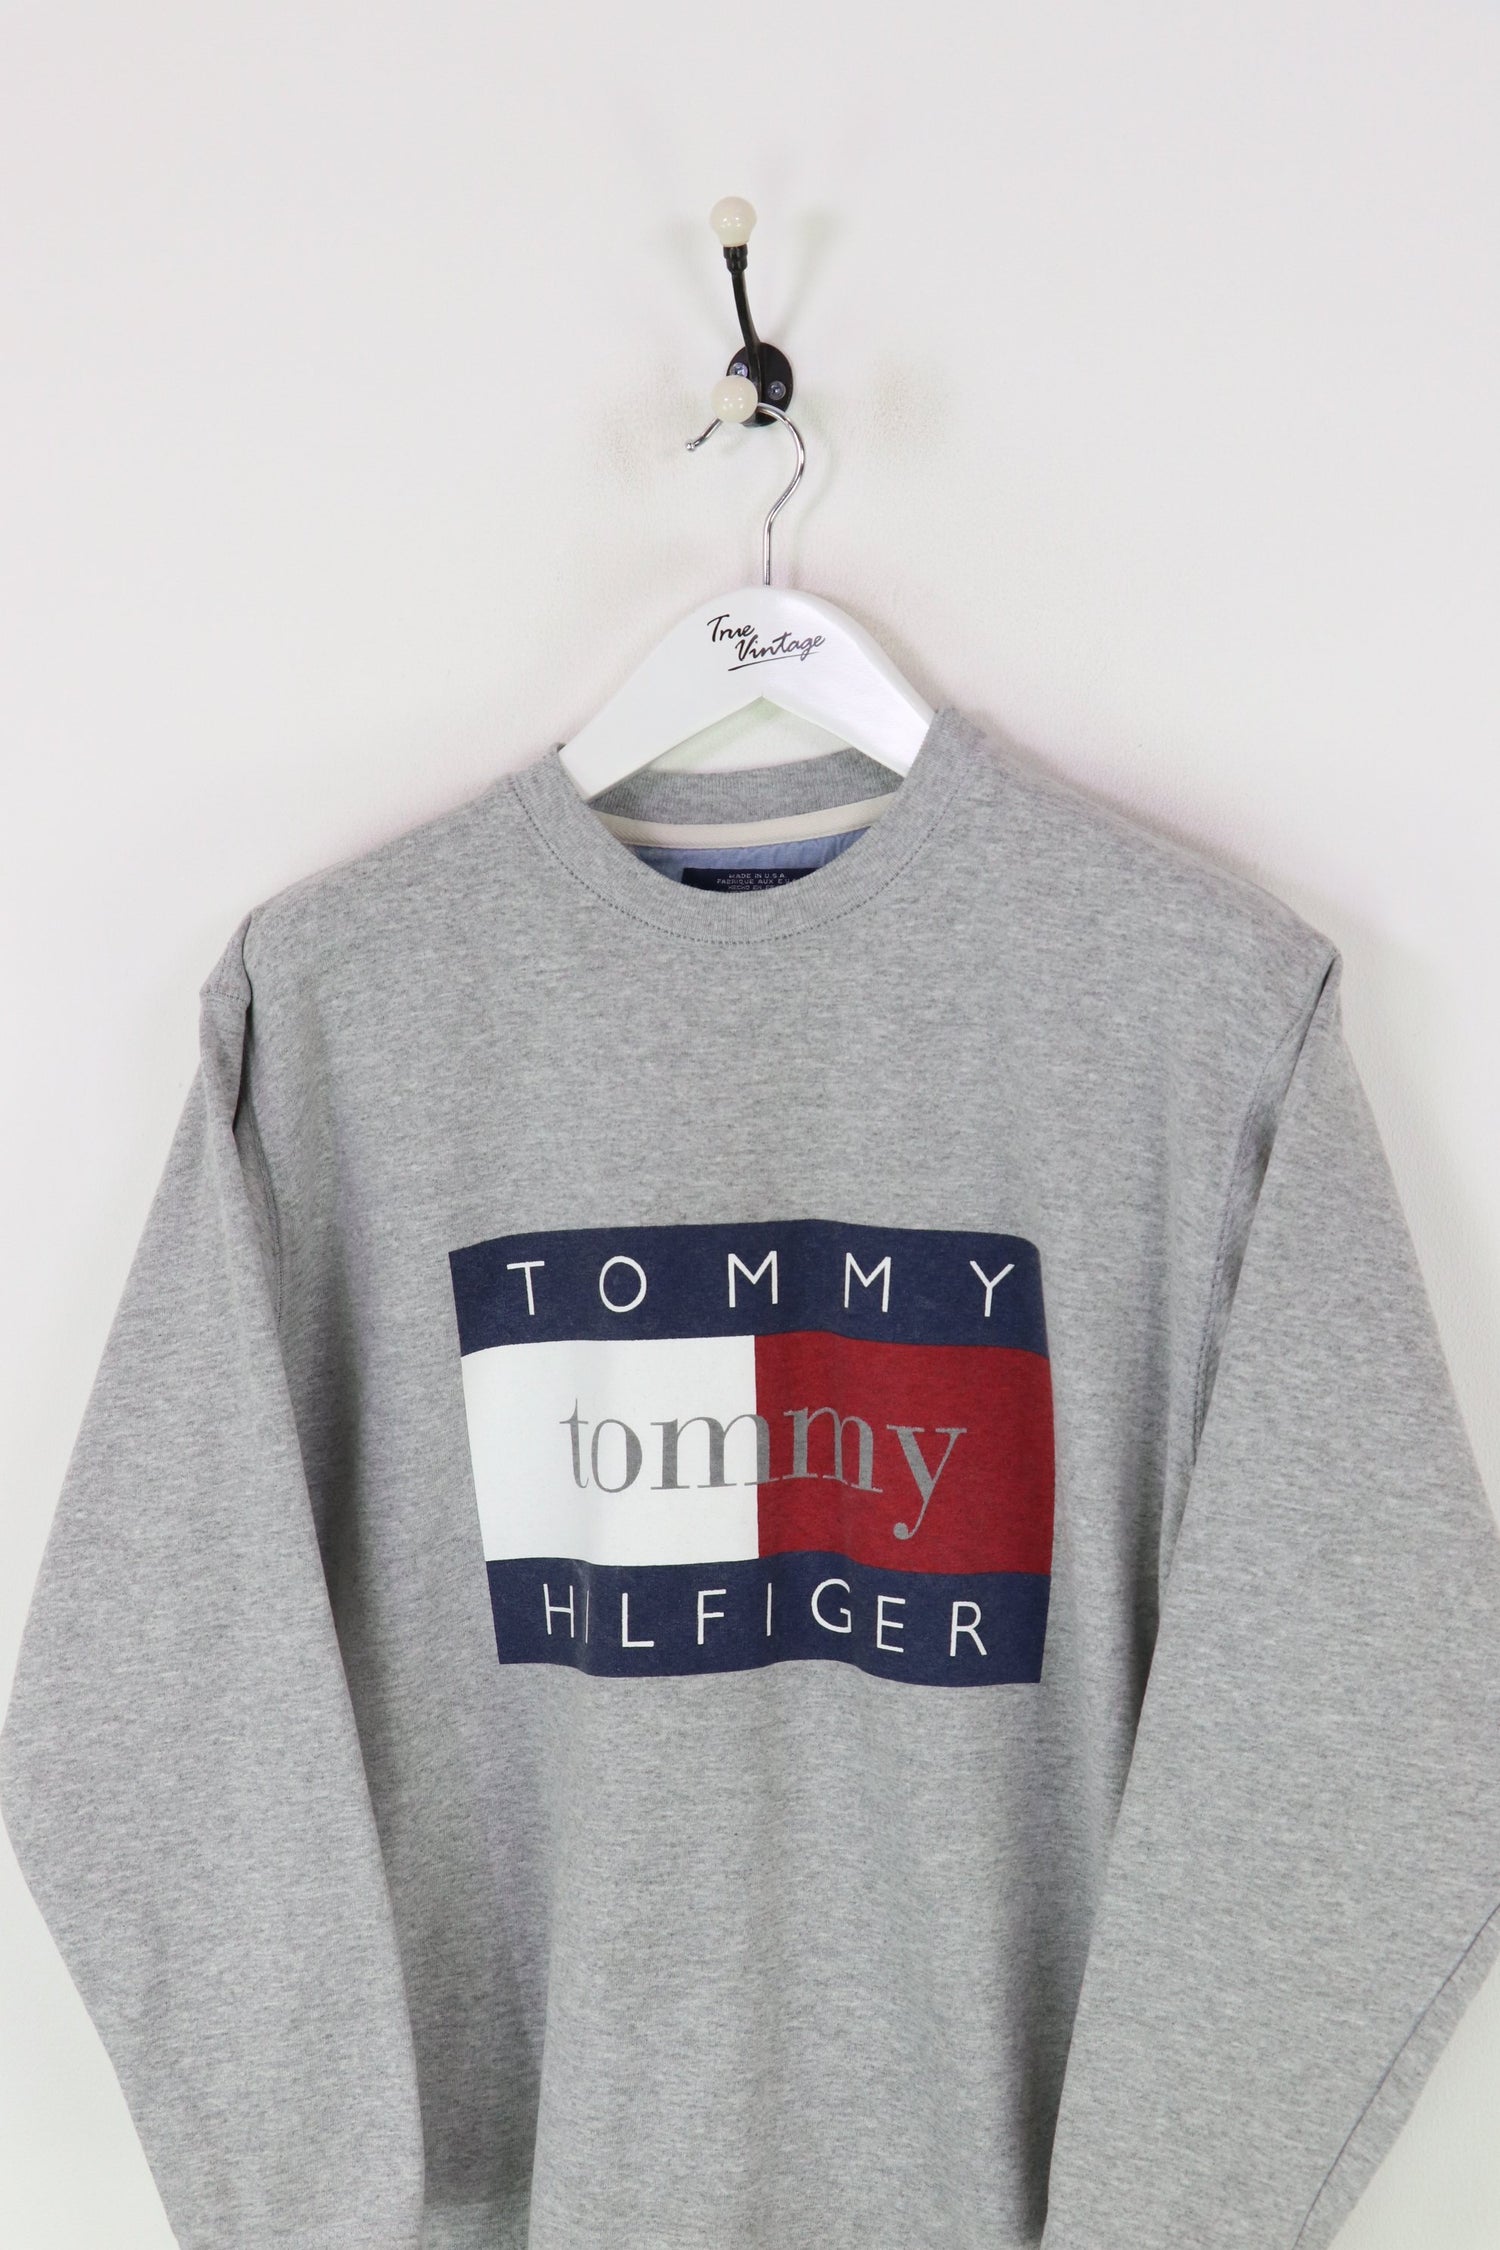 Tommy Hilfiger Sweatshirt Grey Medium